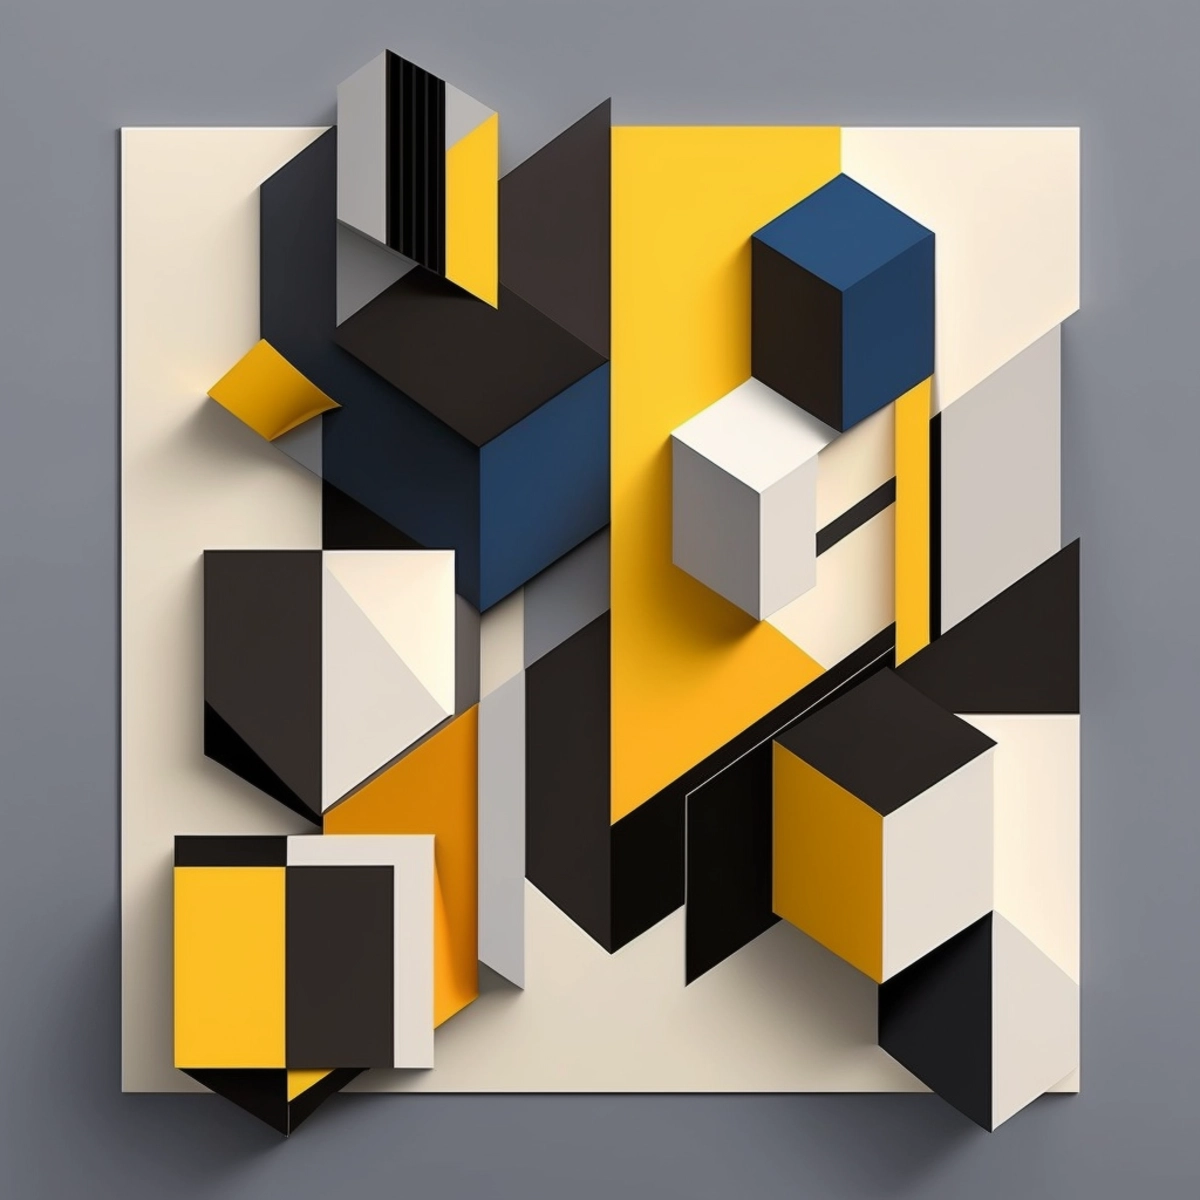 Eine geometrische, minimalistische Komposition mit sich kreuzenden Linien und einfachen Formen in einer kräftigen, kontrastreichen Farbpalette